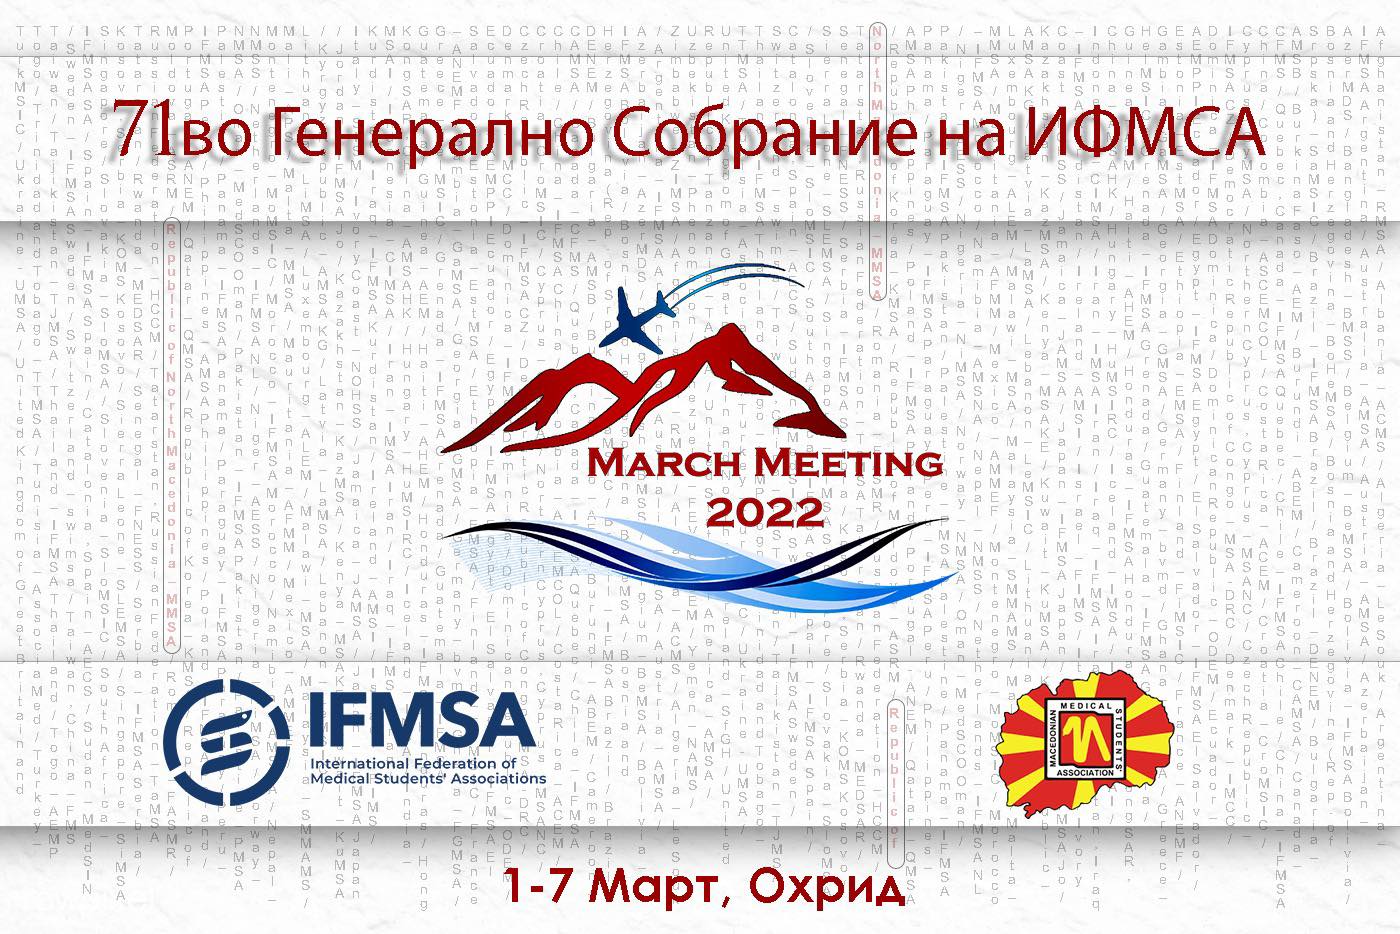 Başkanlığını Türk Doktor Dika’nın Yaptığı Makedonya Tıp Öğrencileri Birliği uluslararası organizasyona ev sahipliği yapacak